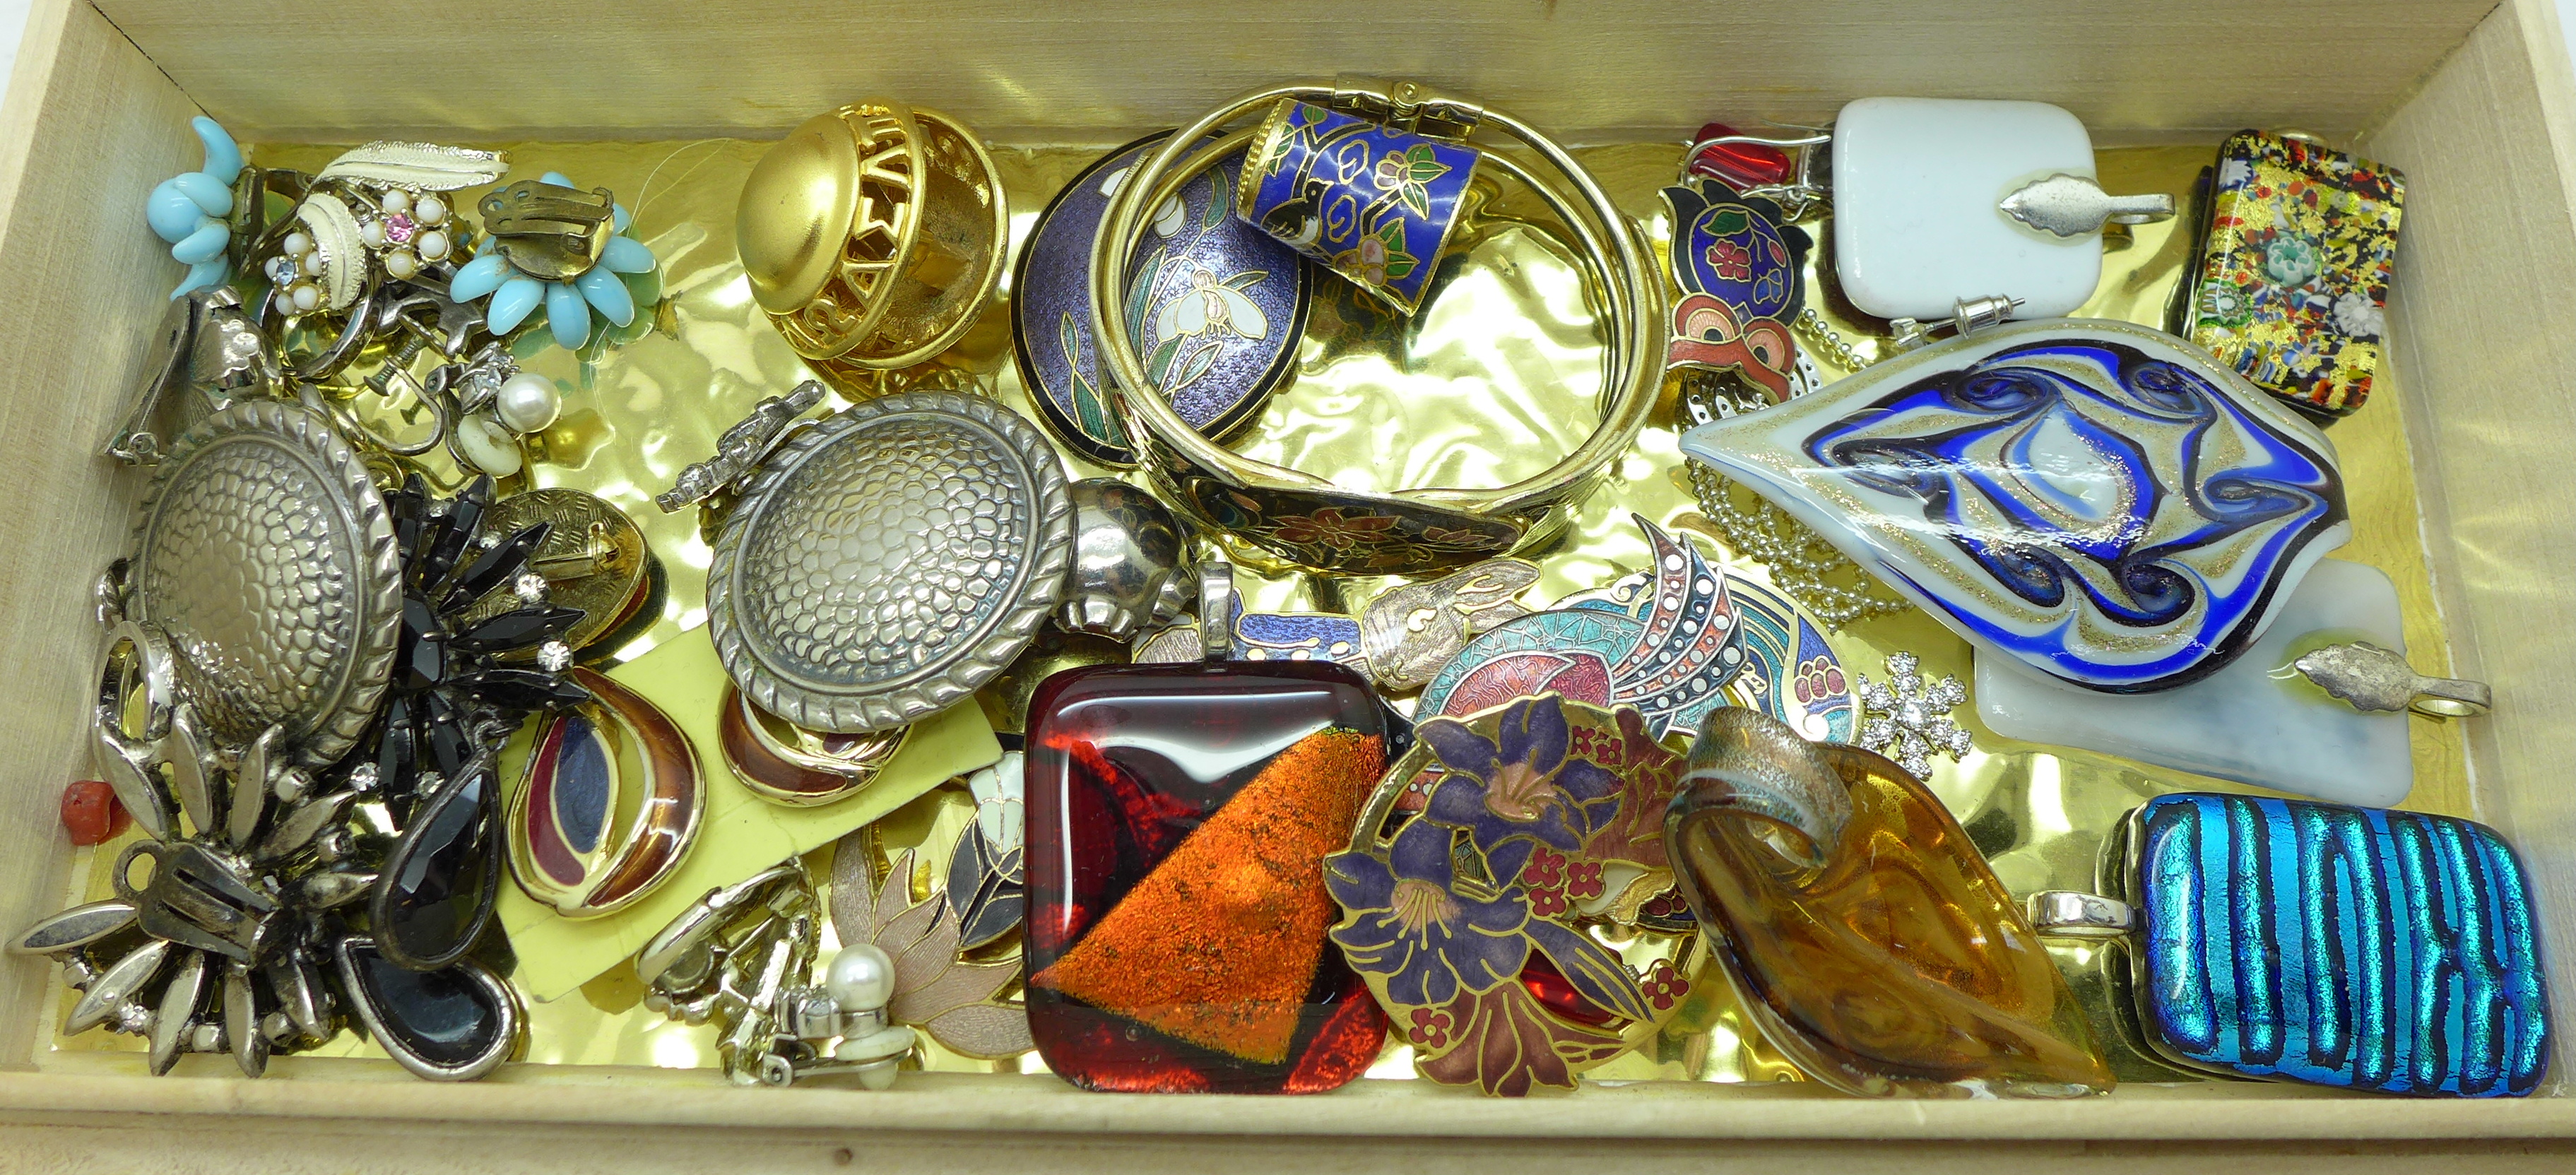 Enamel jewellery, Murano glass pendants, earrings, etc. - Image 3 of 9